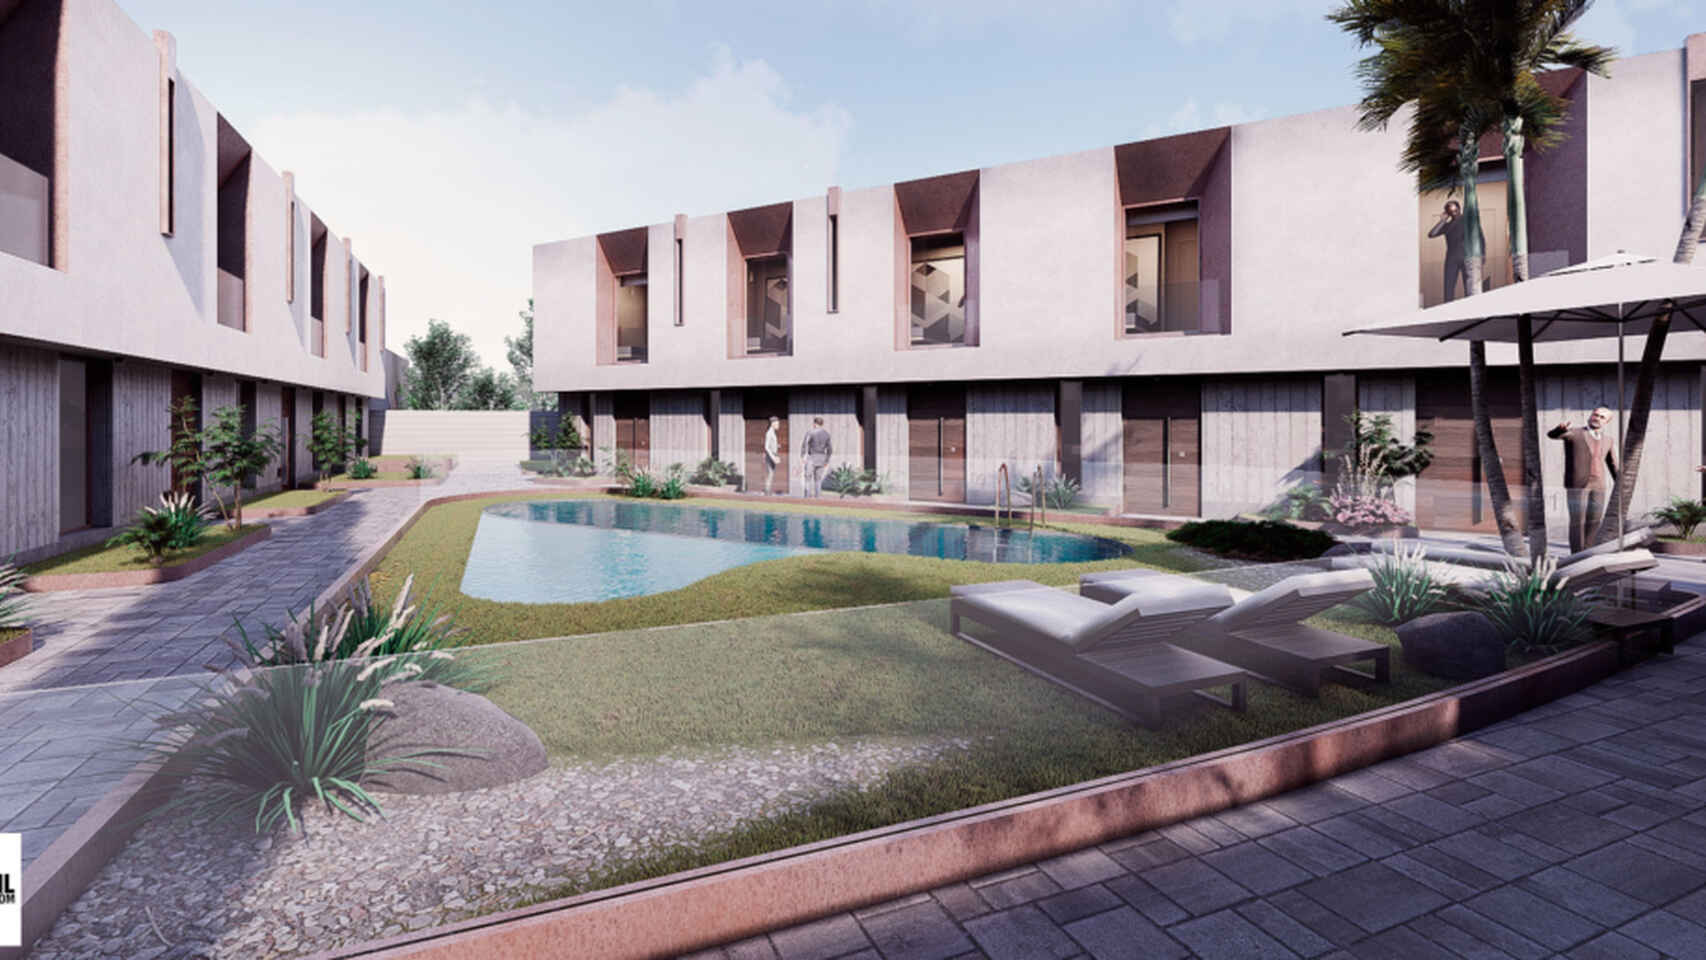 Diseño virtual de las nuevas viviendas de lujo que se construirán en Toledo. Fotos: Cobos Gil Arquitectos.